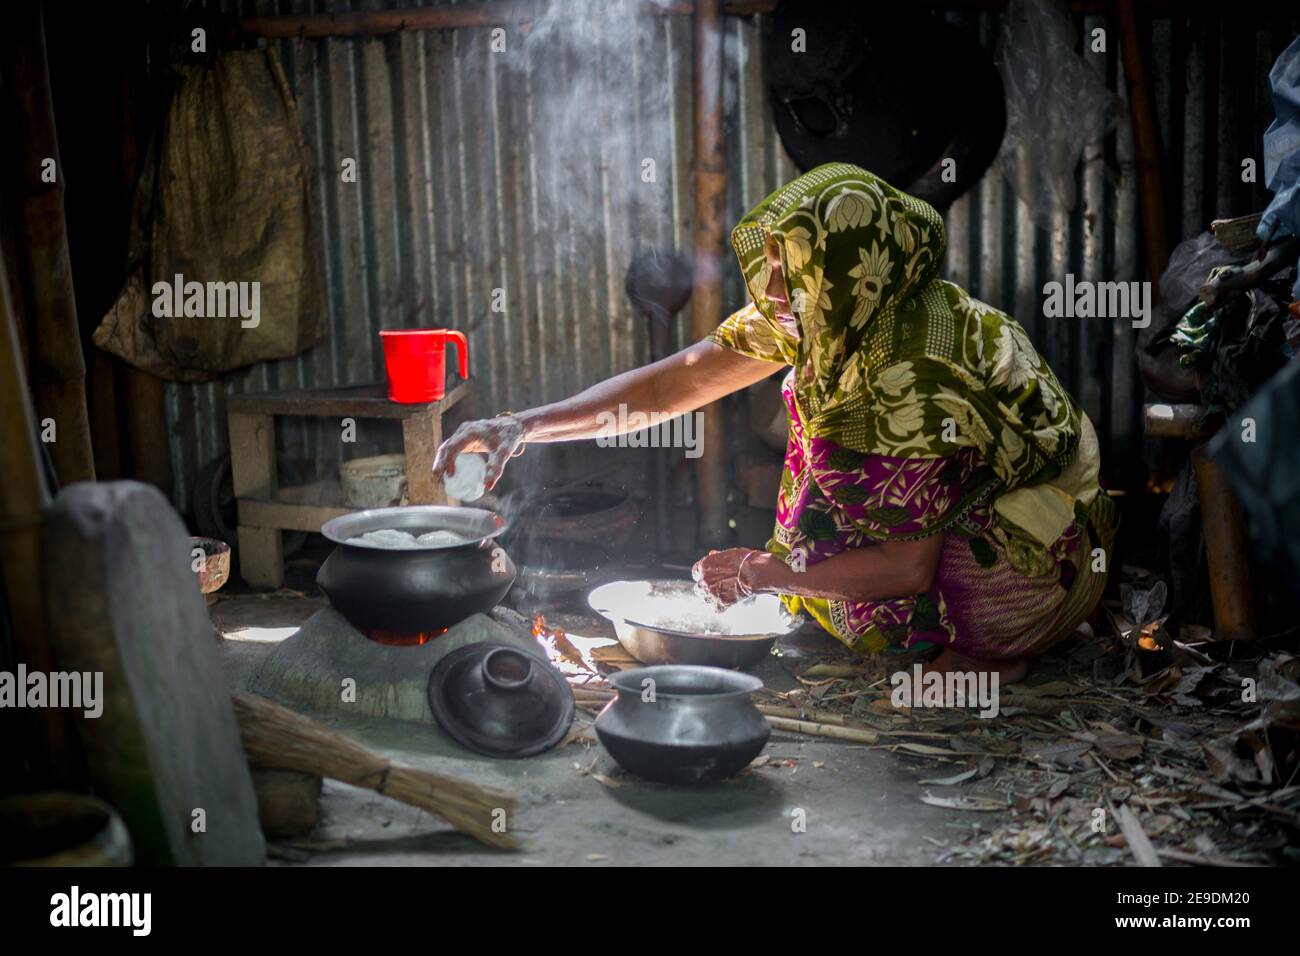 A woman is cooking rice balls on a traditional charcoal-burning clay stove at Narsingdi, Bangladesh. Stock Photo